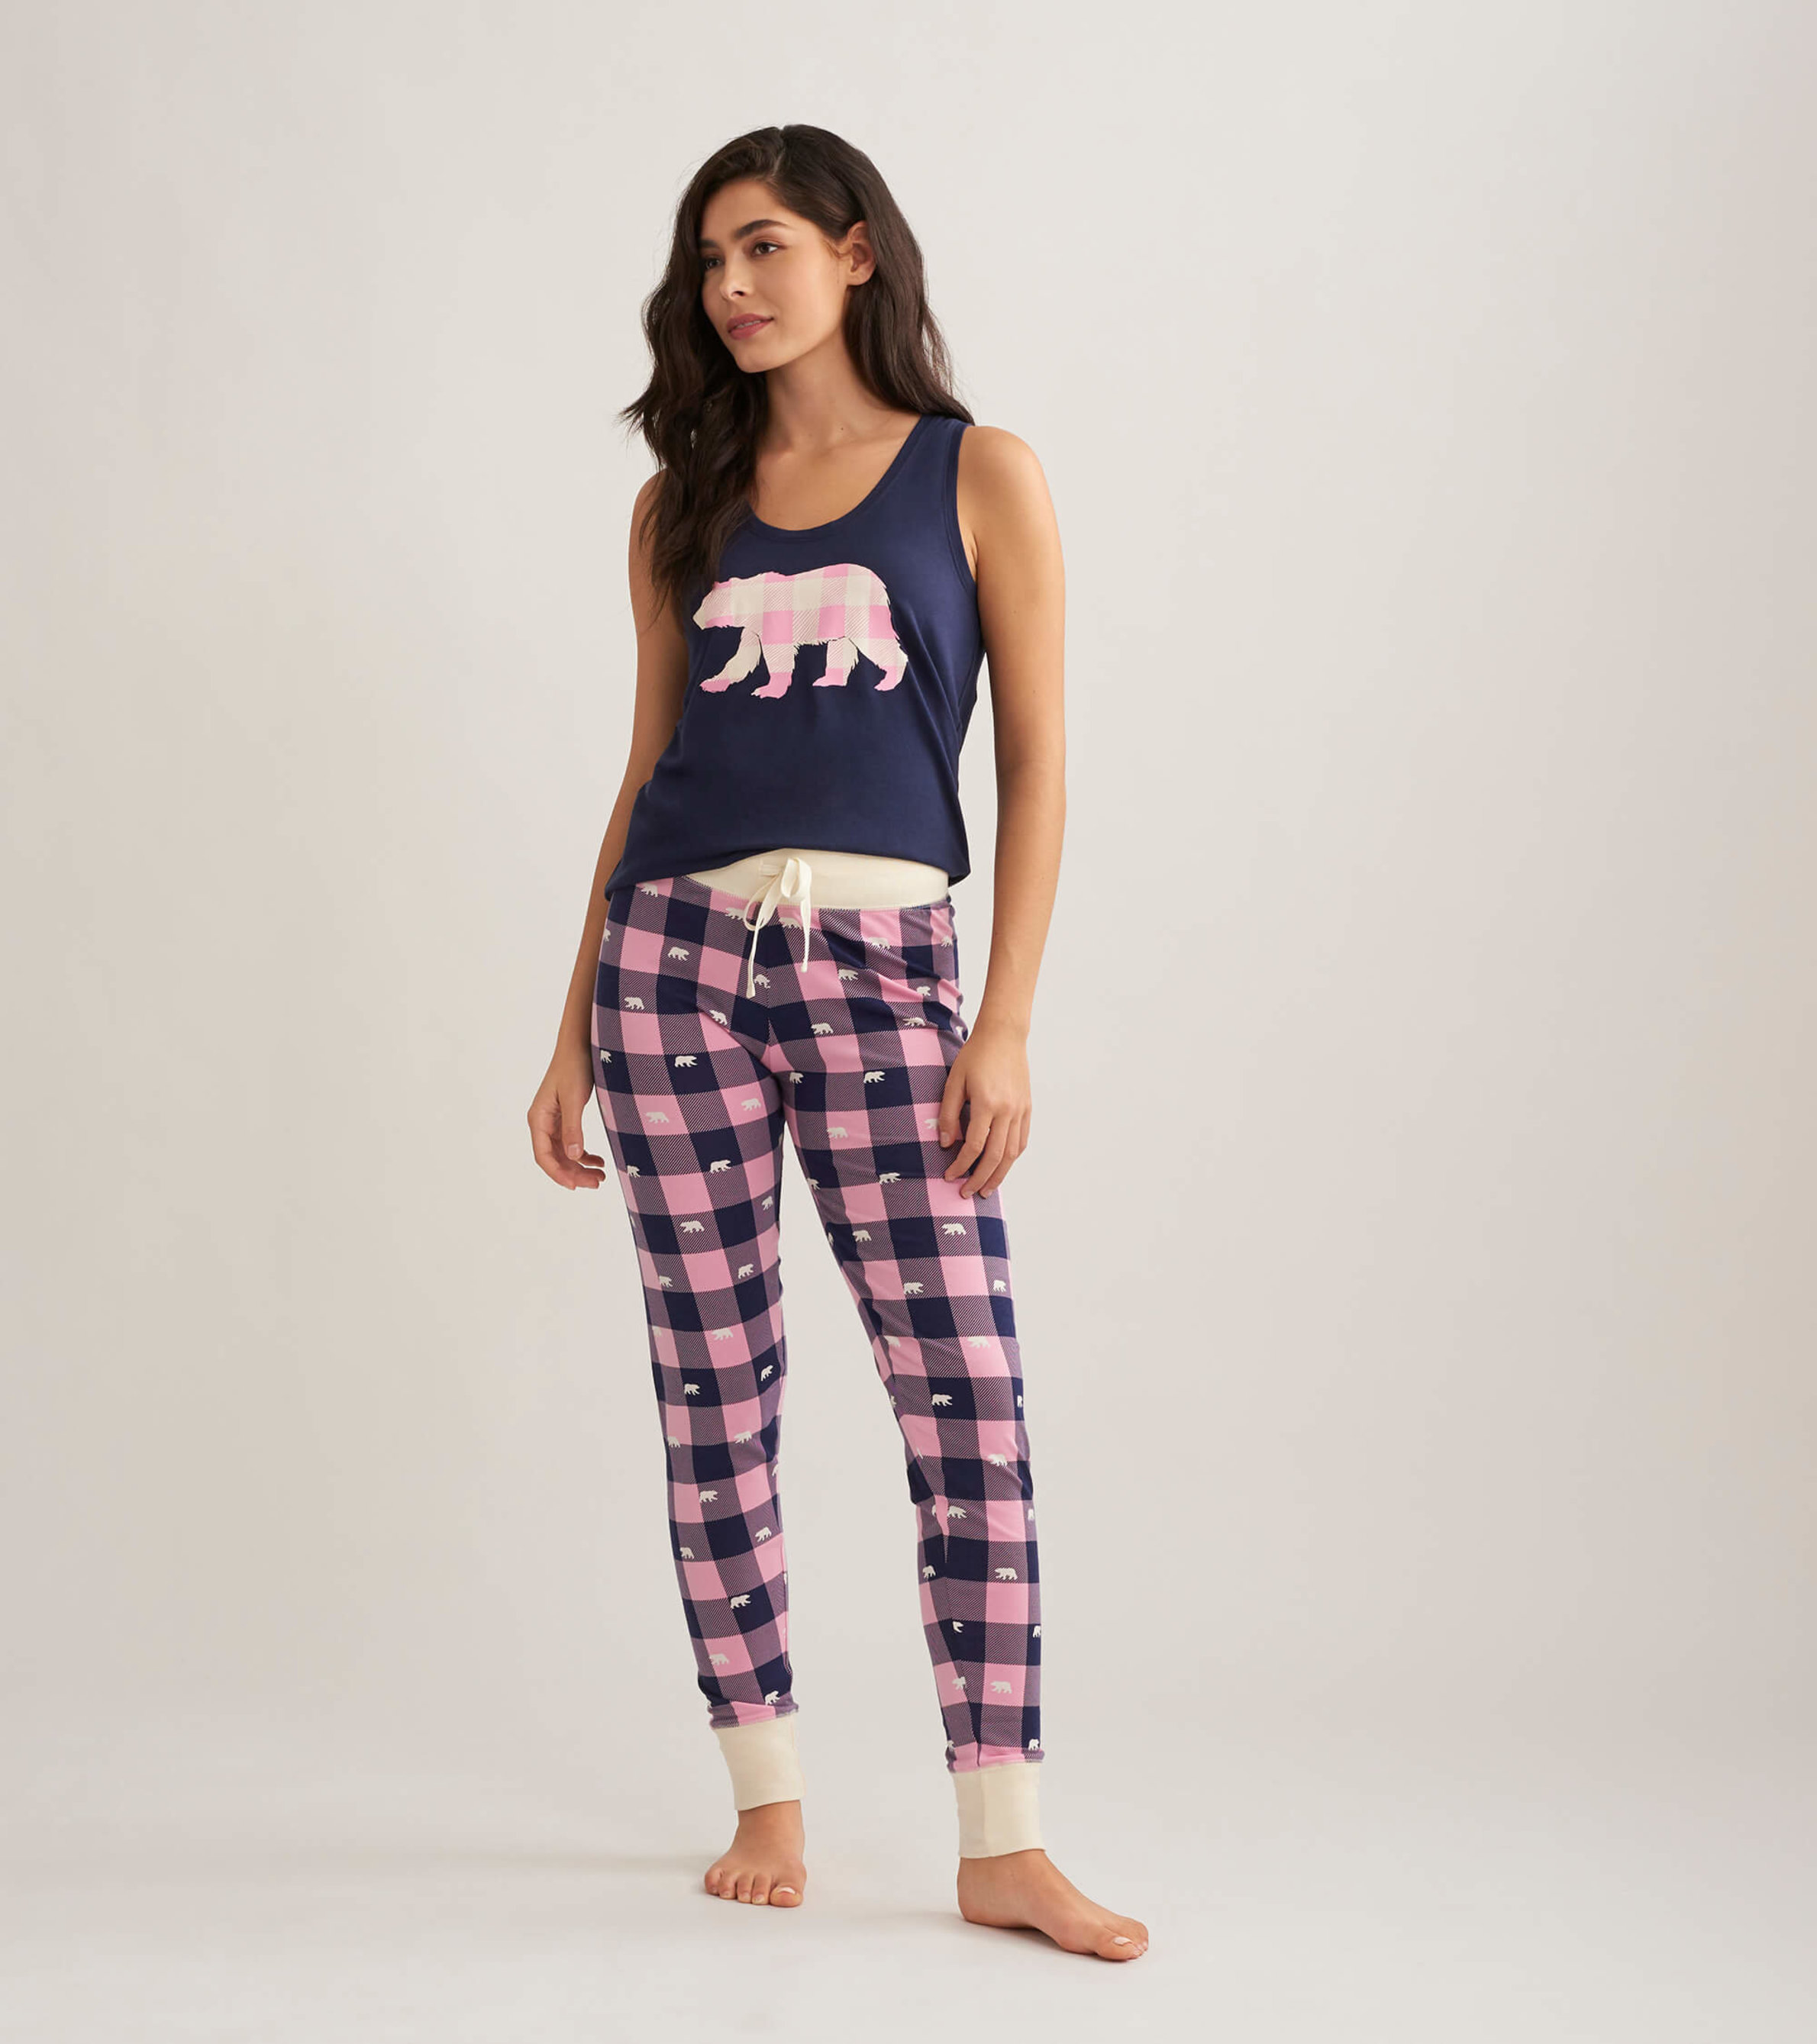 Women's Pajamas, Sleepwear for Women